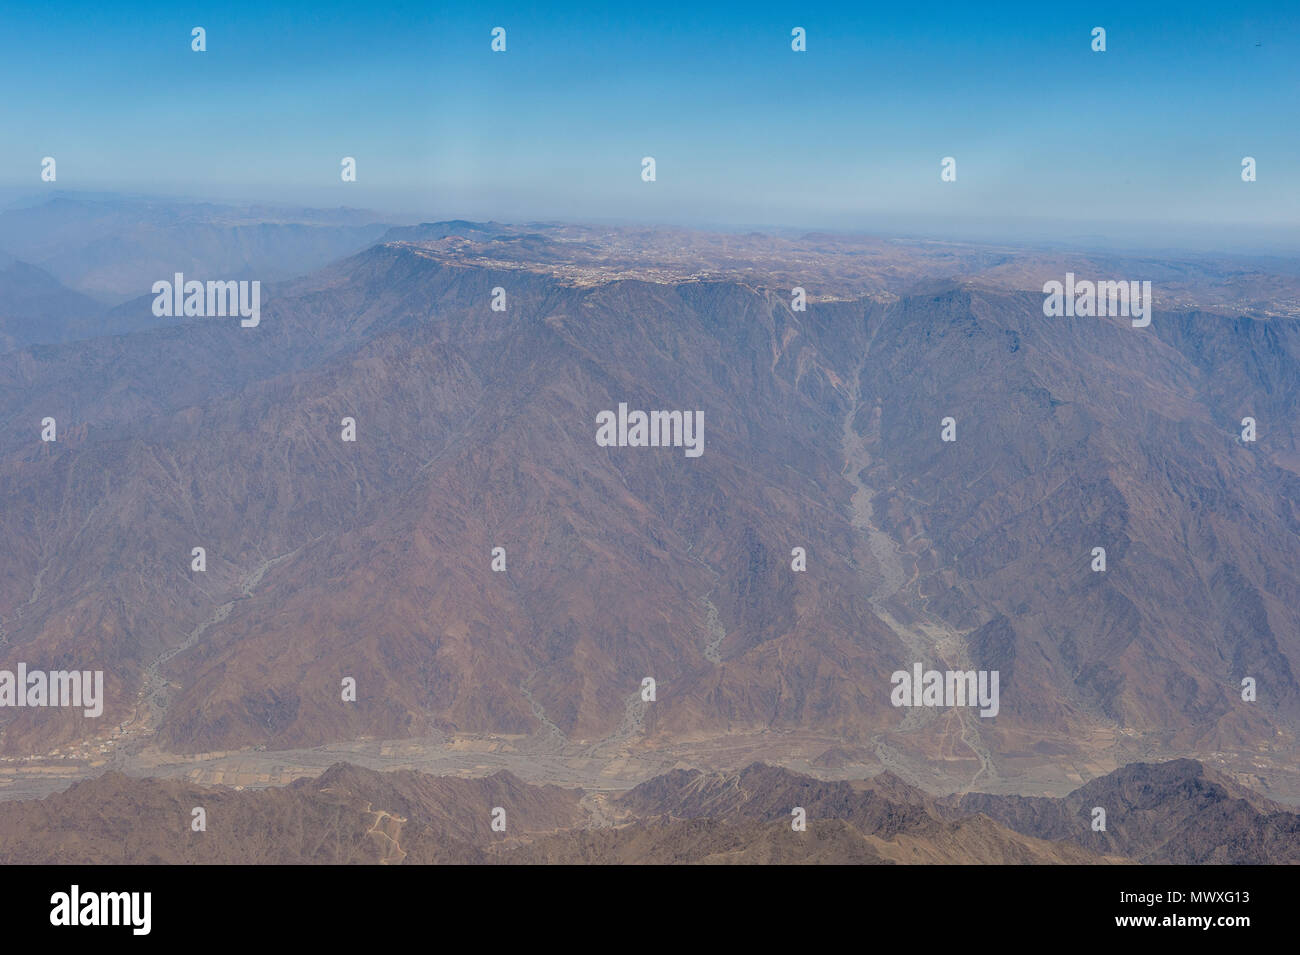 Vue aérienne de la région montagneuse autour de Abha, Arabie saoudite, Moyen Orient Banque D'Images